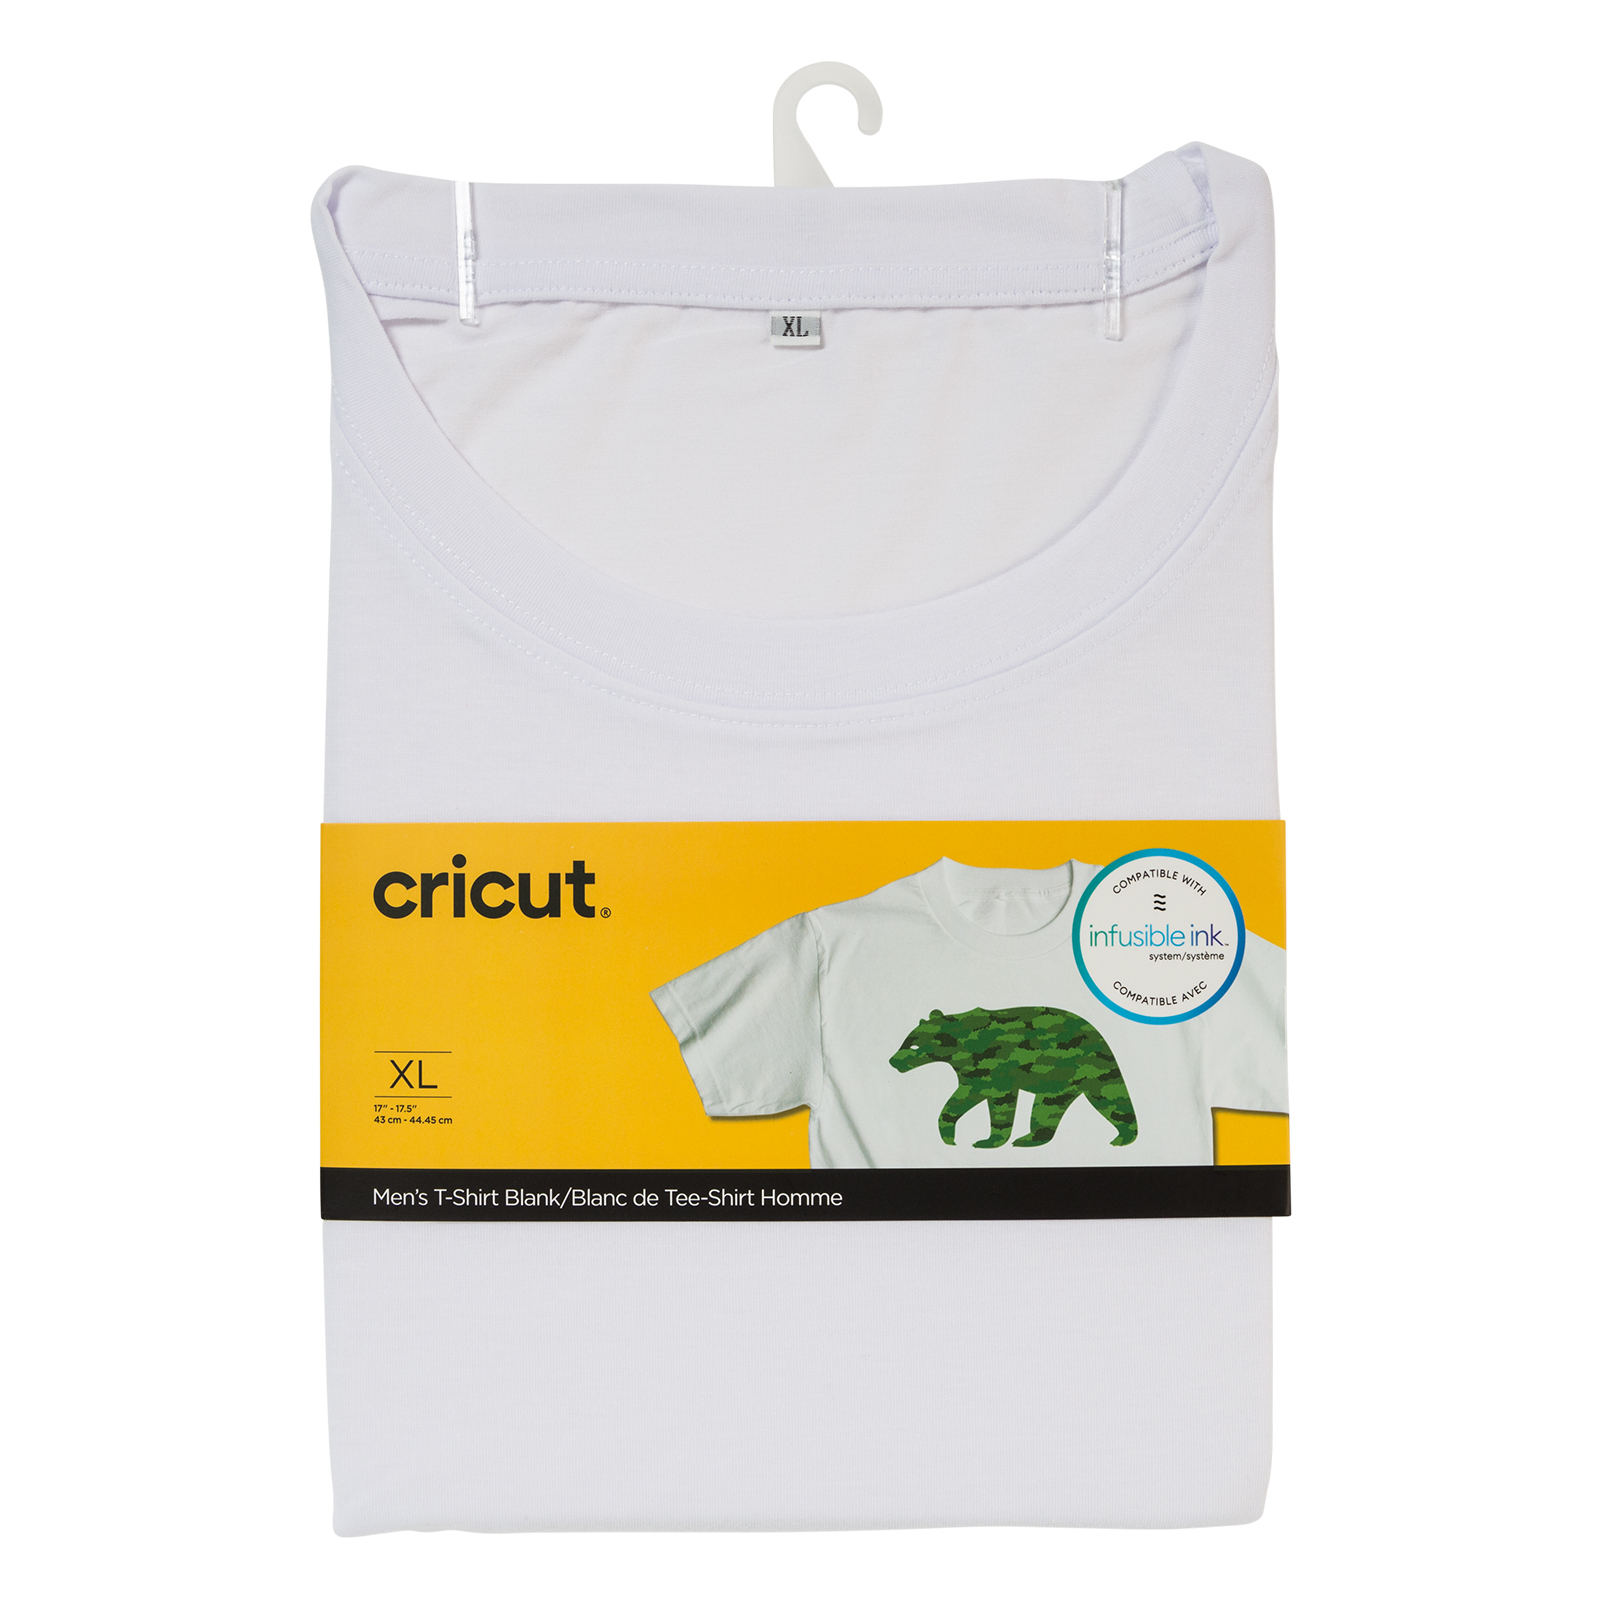 Cricut • Crew neck T-Shirt Blank size XL